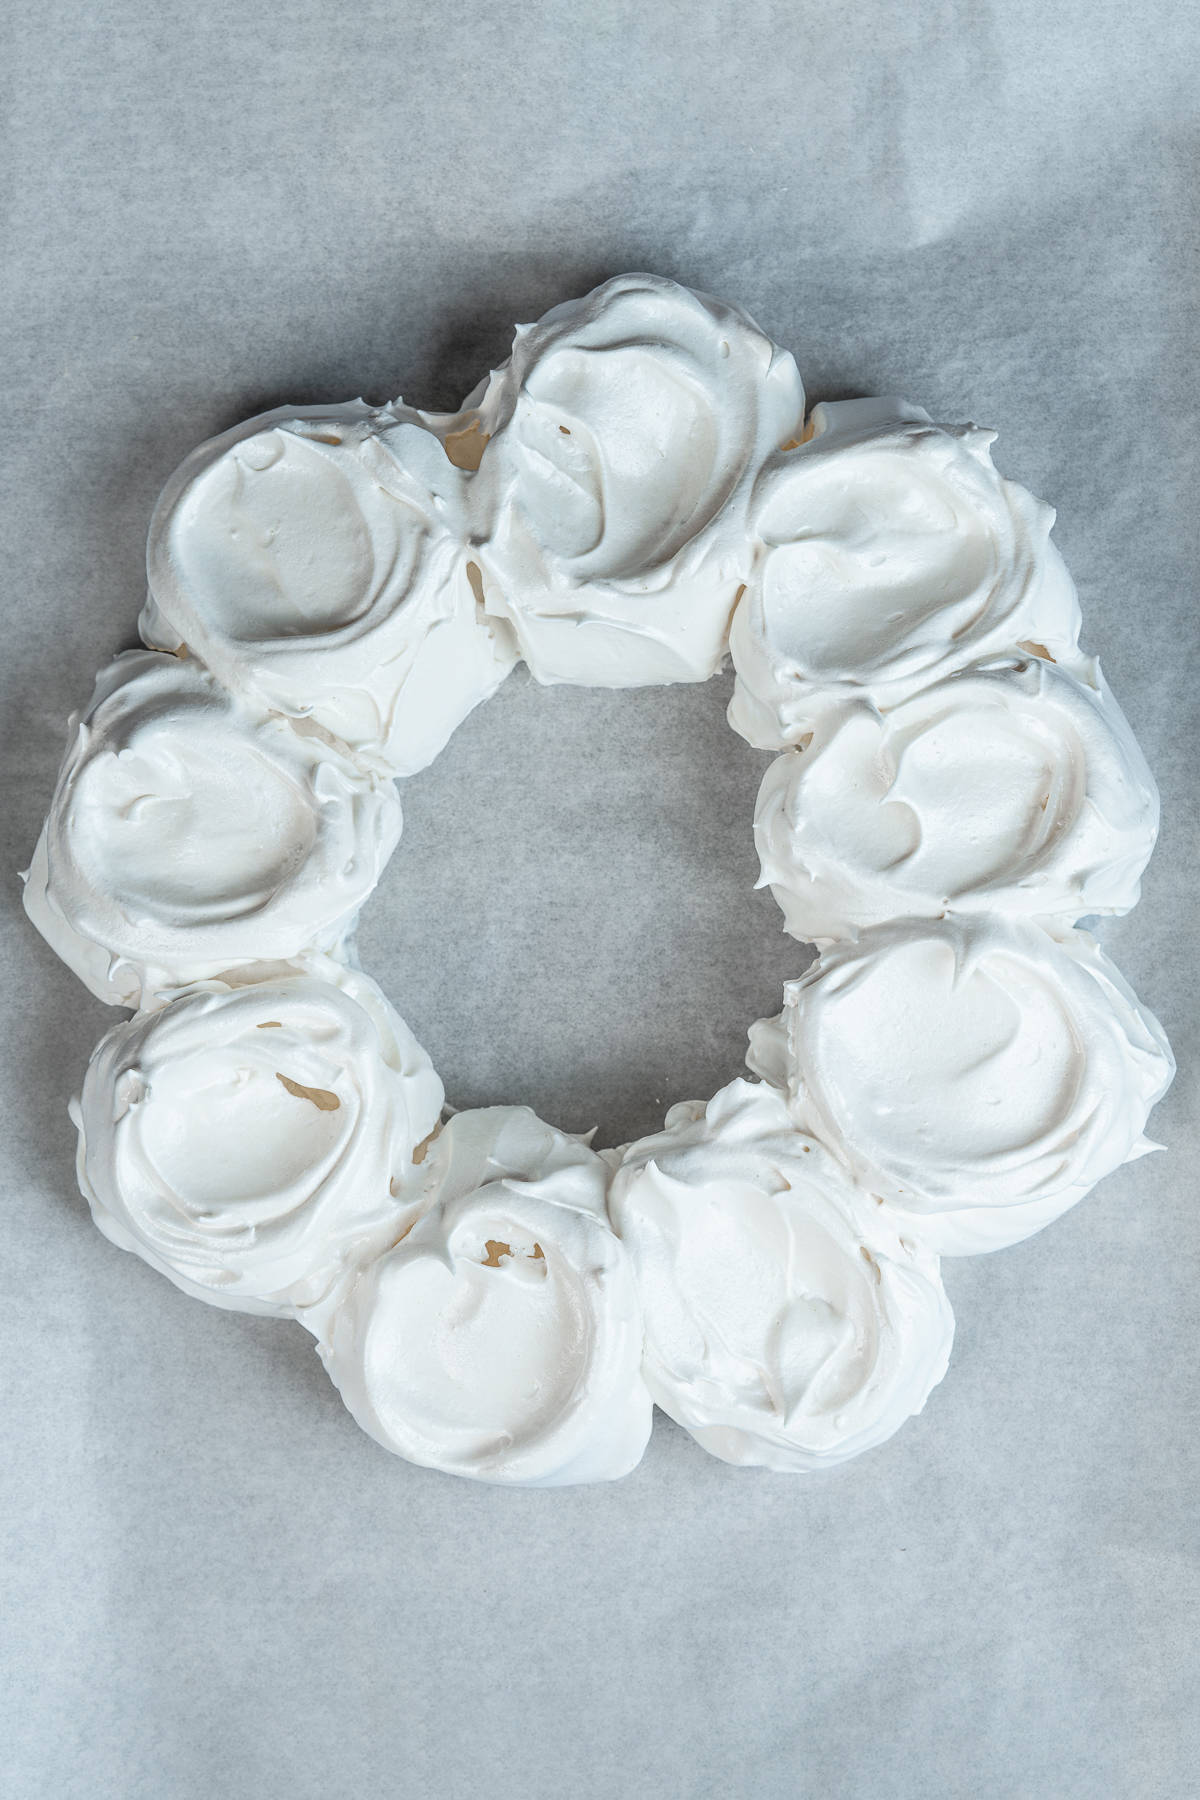 Baked meringue wreath on parchment paper.